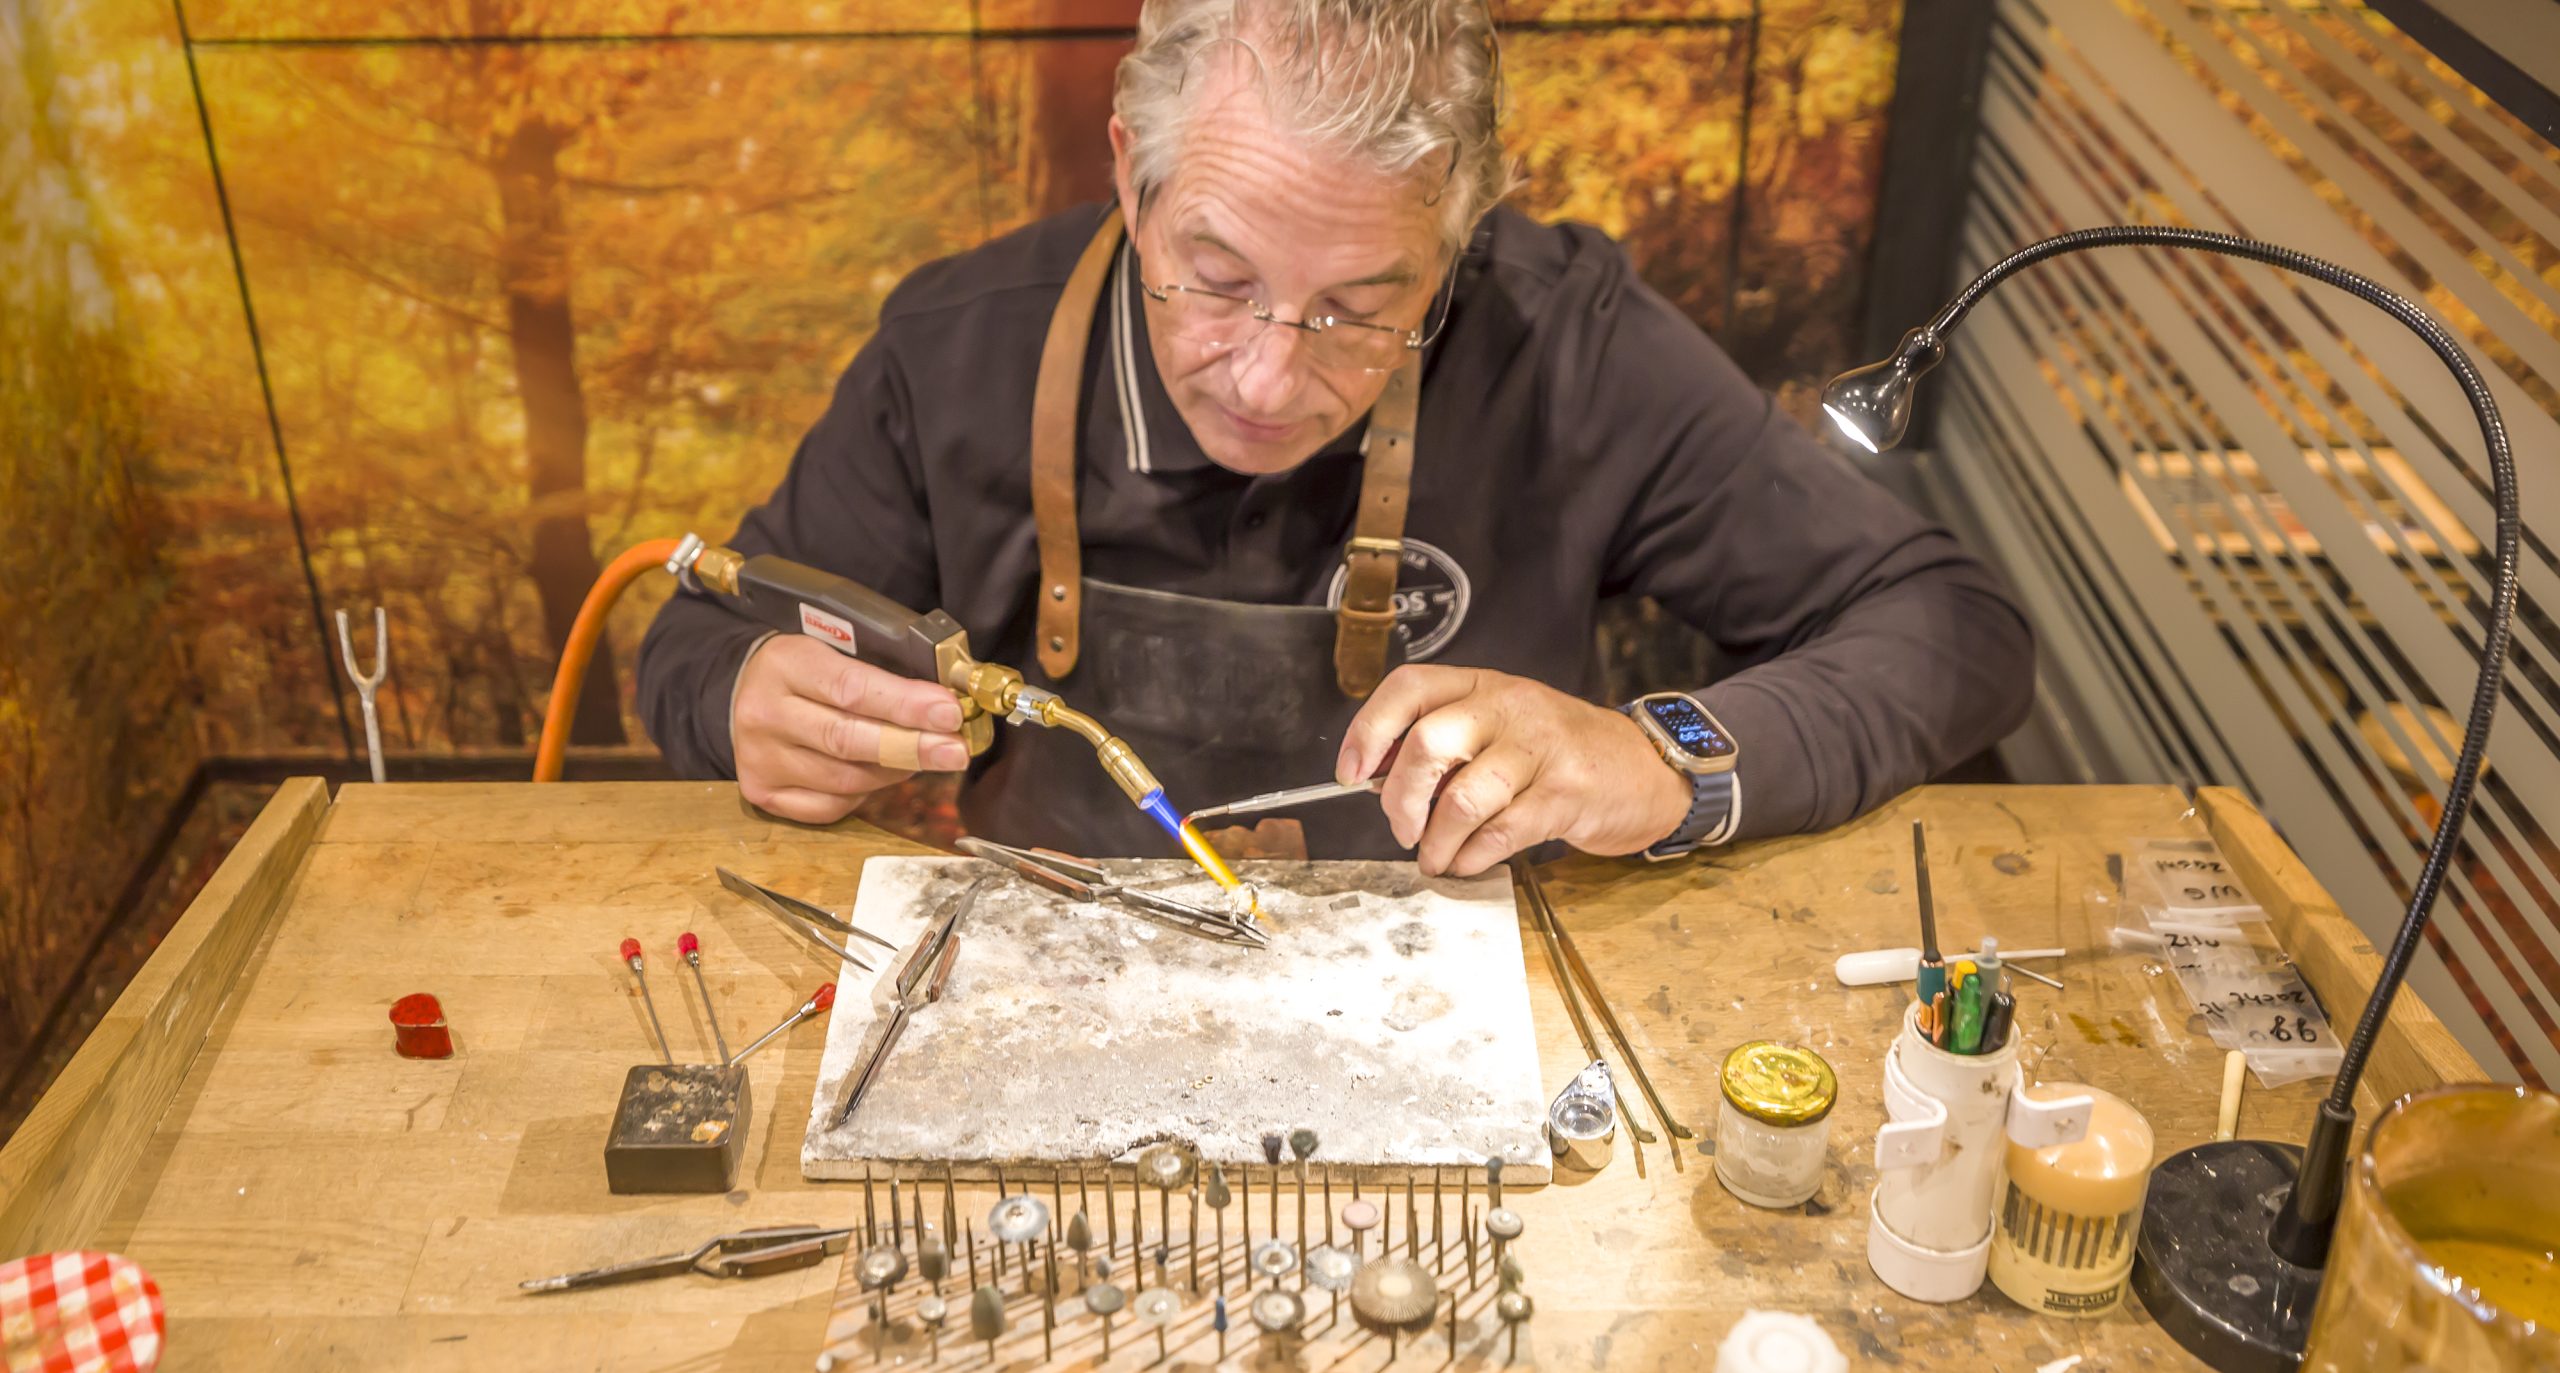 Juwelier Jos van Beek zit achter werkband en soldeert een ring met een brander achter werkbank.